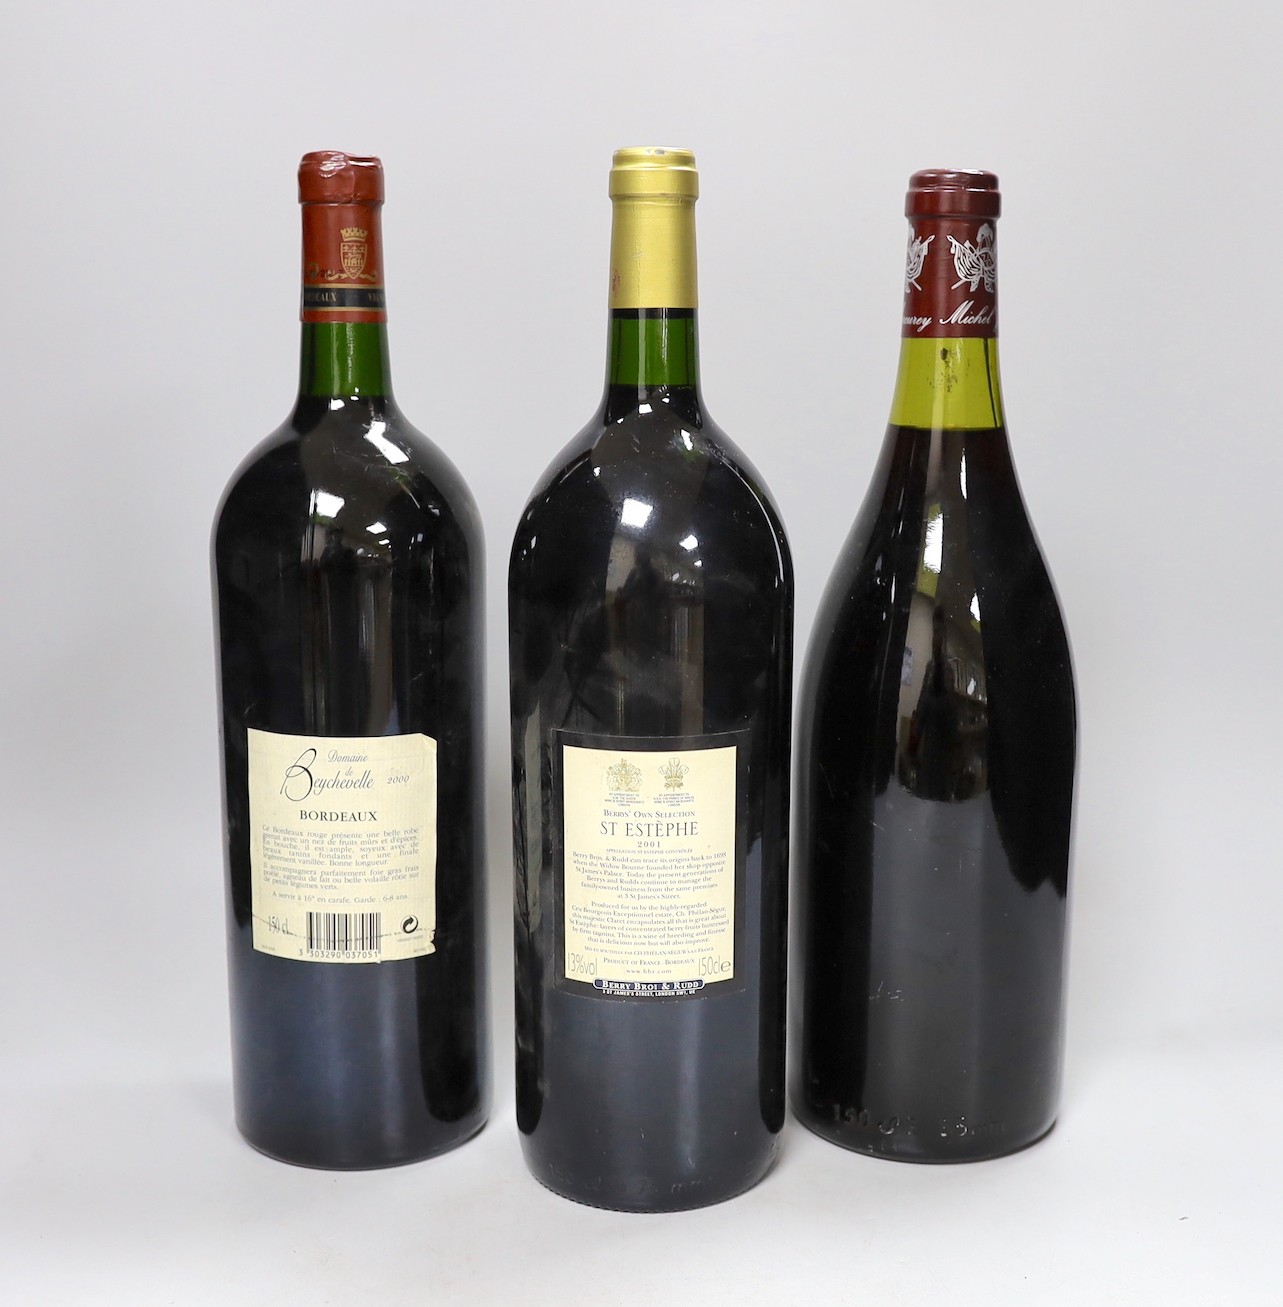 A bottle of Domaine de Beychevelle, Bordeaux 2000, a 1990 Mercurey and a bottle of St Estephe, (3)